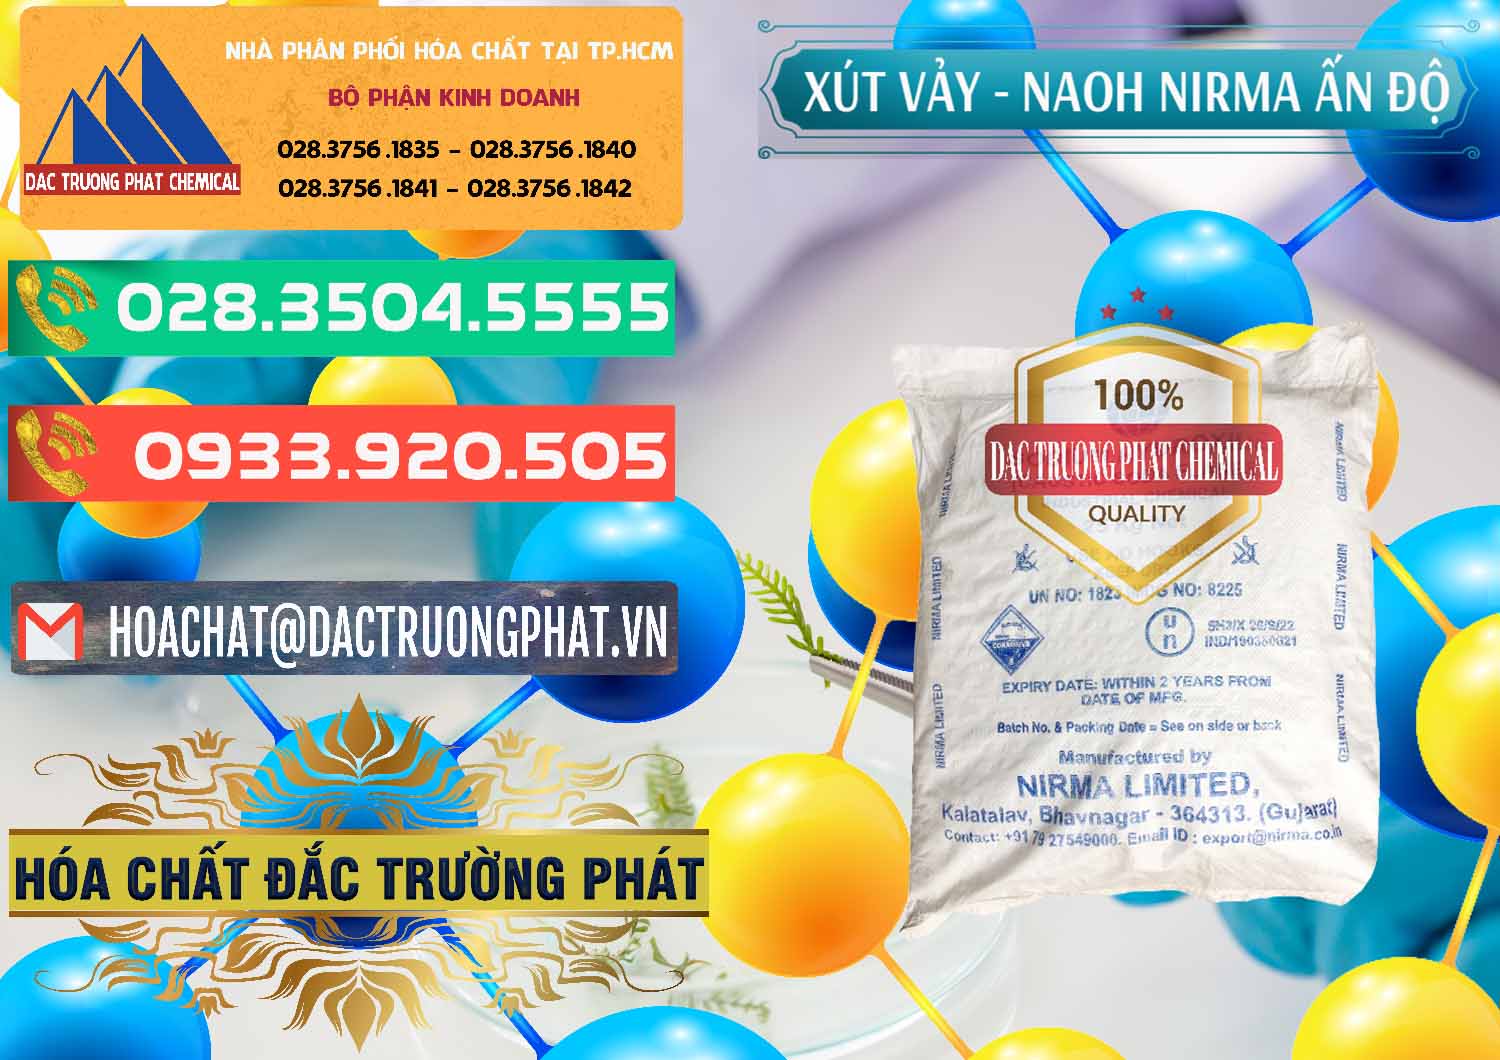 Công ty chuyên kinh doanh - bán Xút Vảy - NaOH Vảy Nirma Ấn Độ India - 0371 - Cty chuyên phân phối - kinh doanh hóa chất tại TP.HCM - congtyhoachat.com.vn